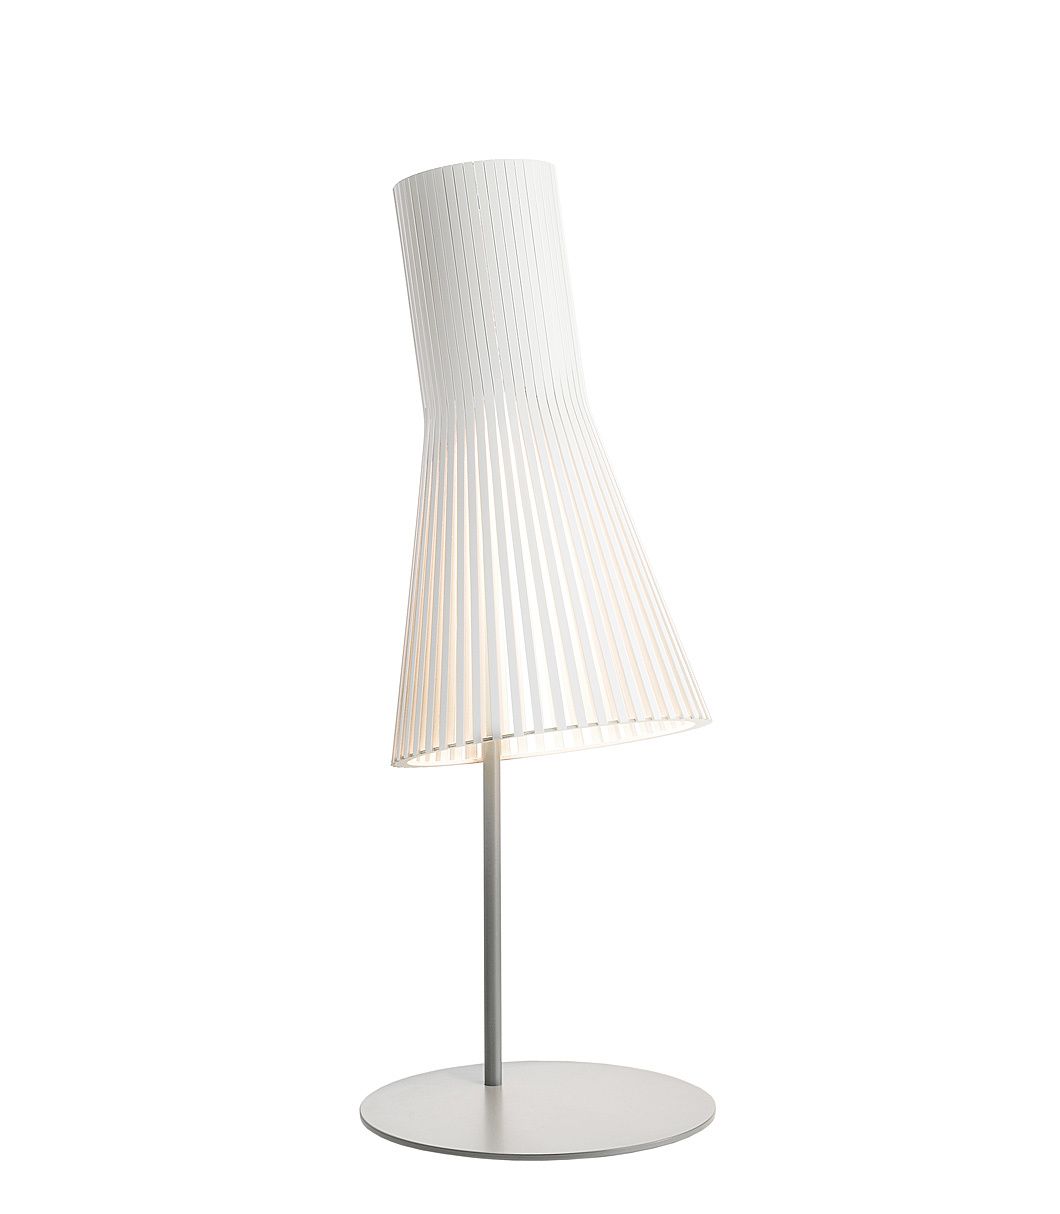 Lampe de table Secto 4220 est disponible en stratifié blanc